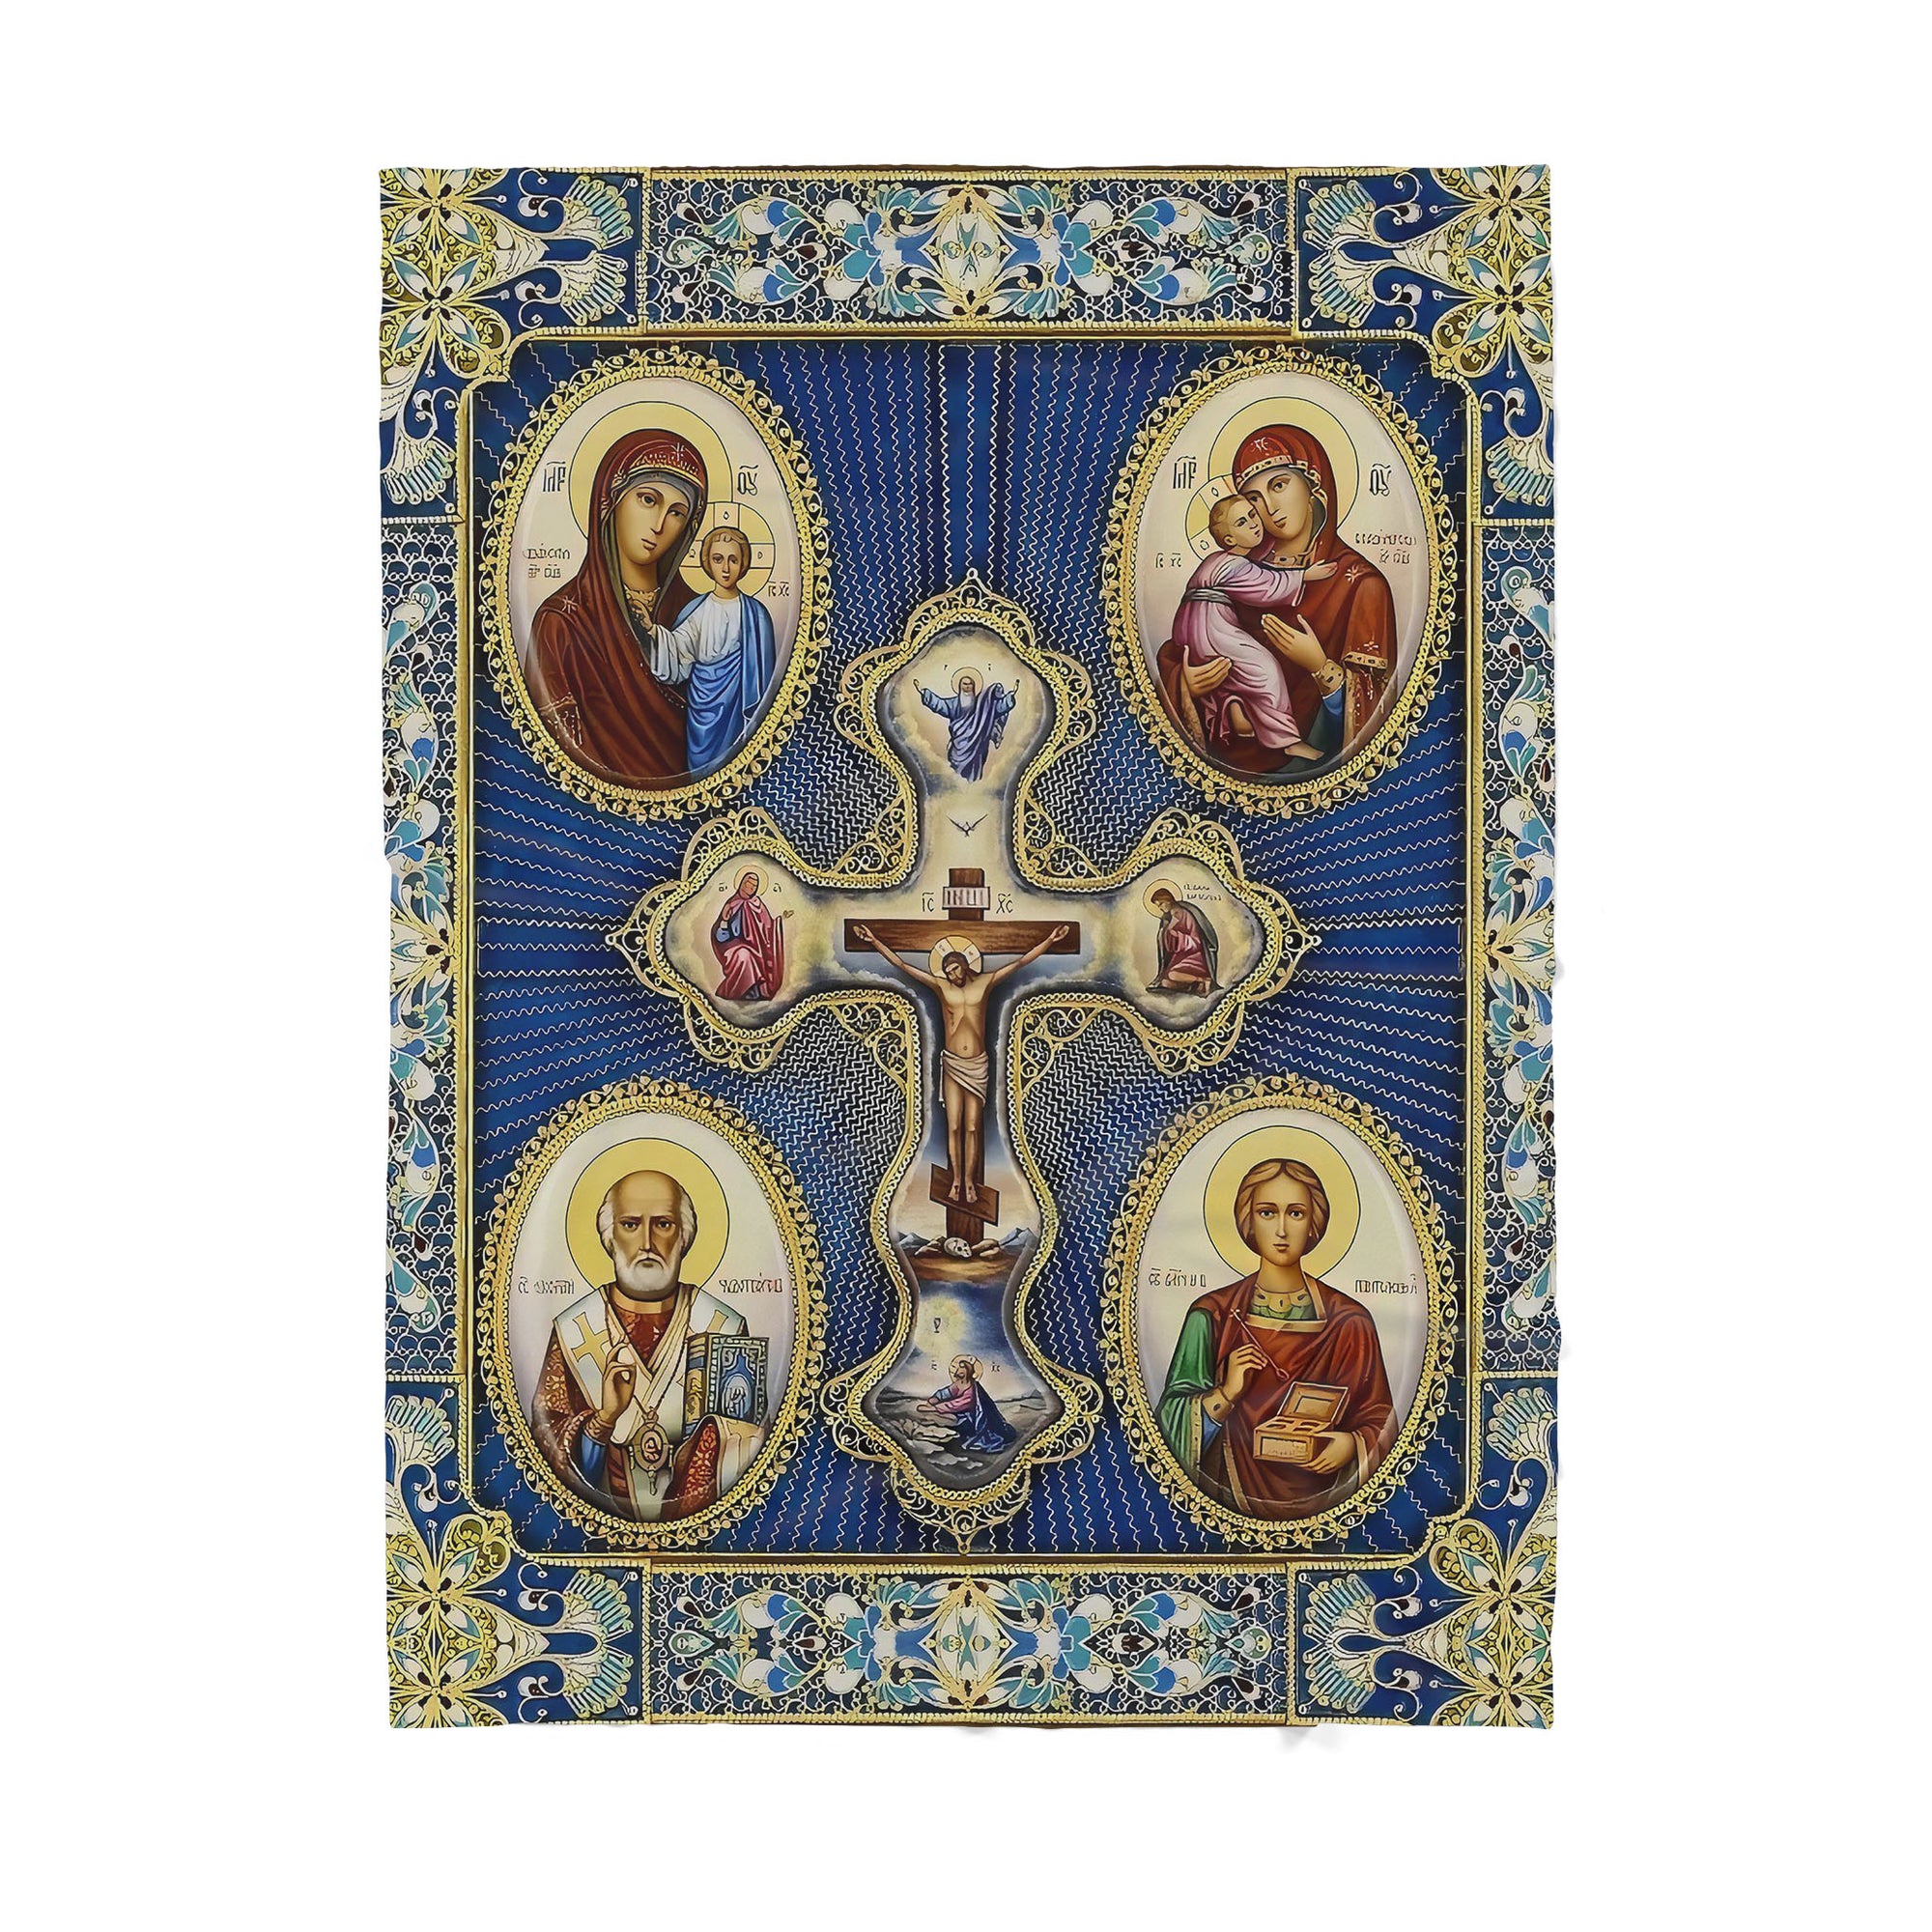 Premium Christian Jesus Cross in Catholic Blanket - Best gift for Christian - sherpa blanket TT